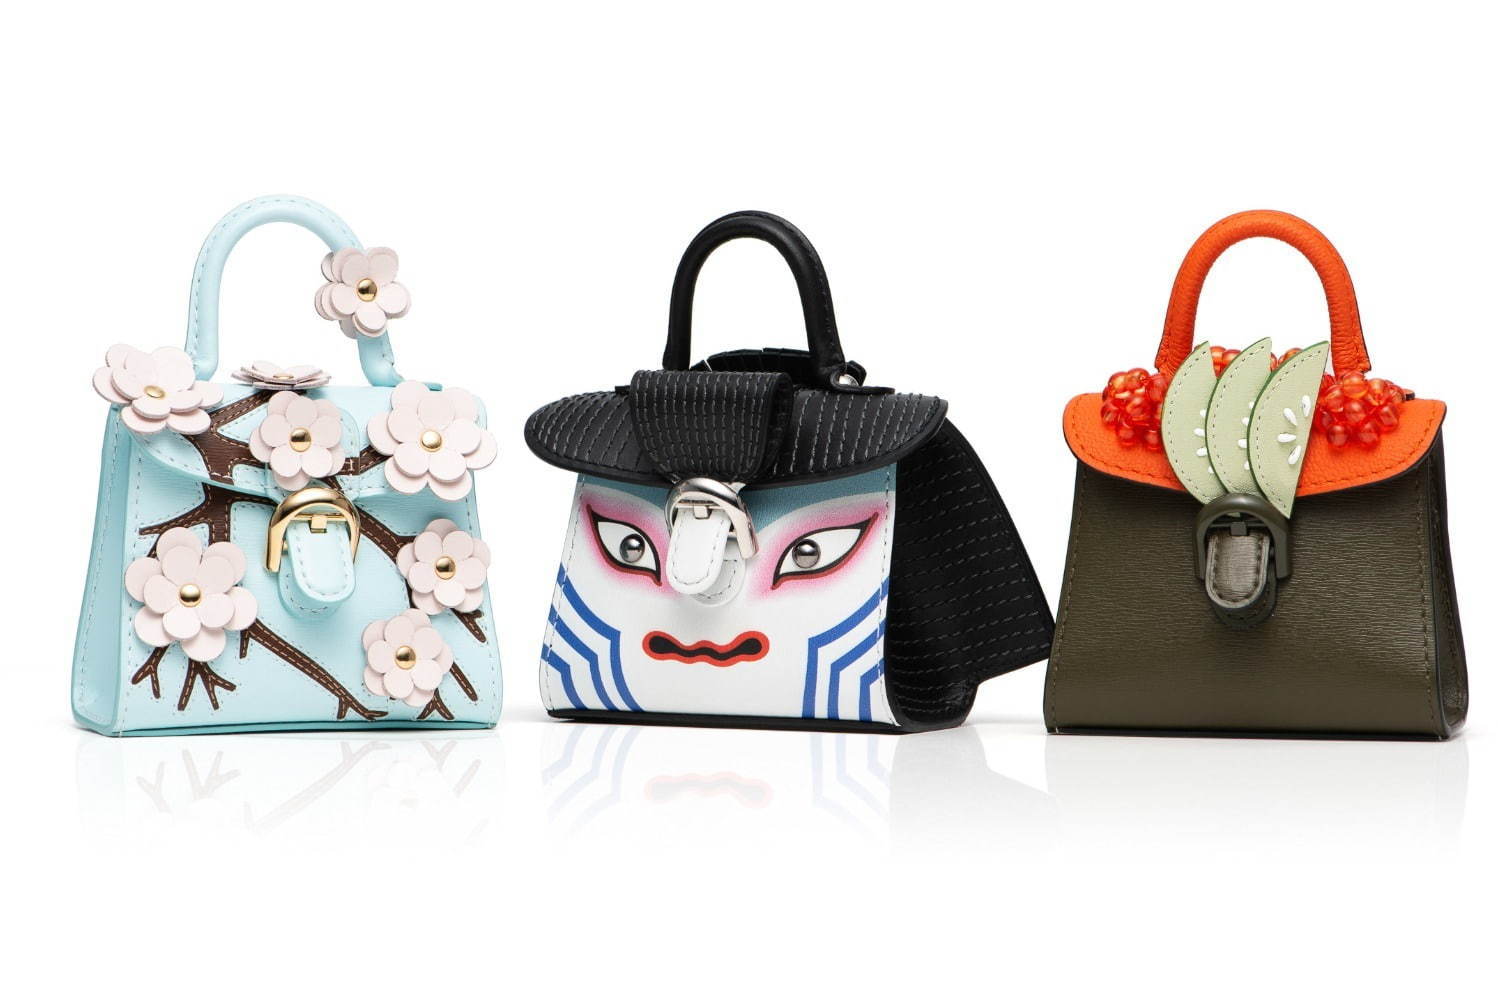 デルヴォー人気バッグ「ブリヨン」がミニチュアサイズに、歌舞伎&寿司 